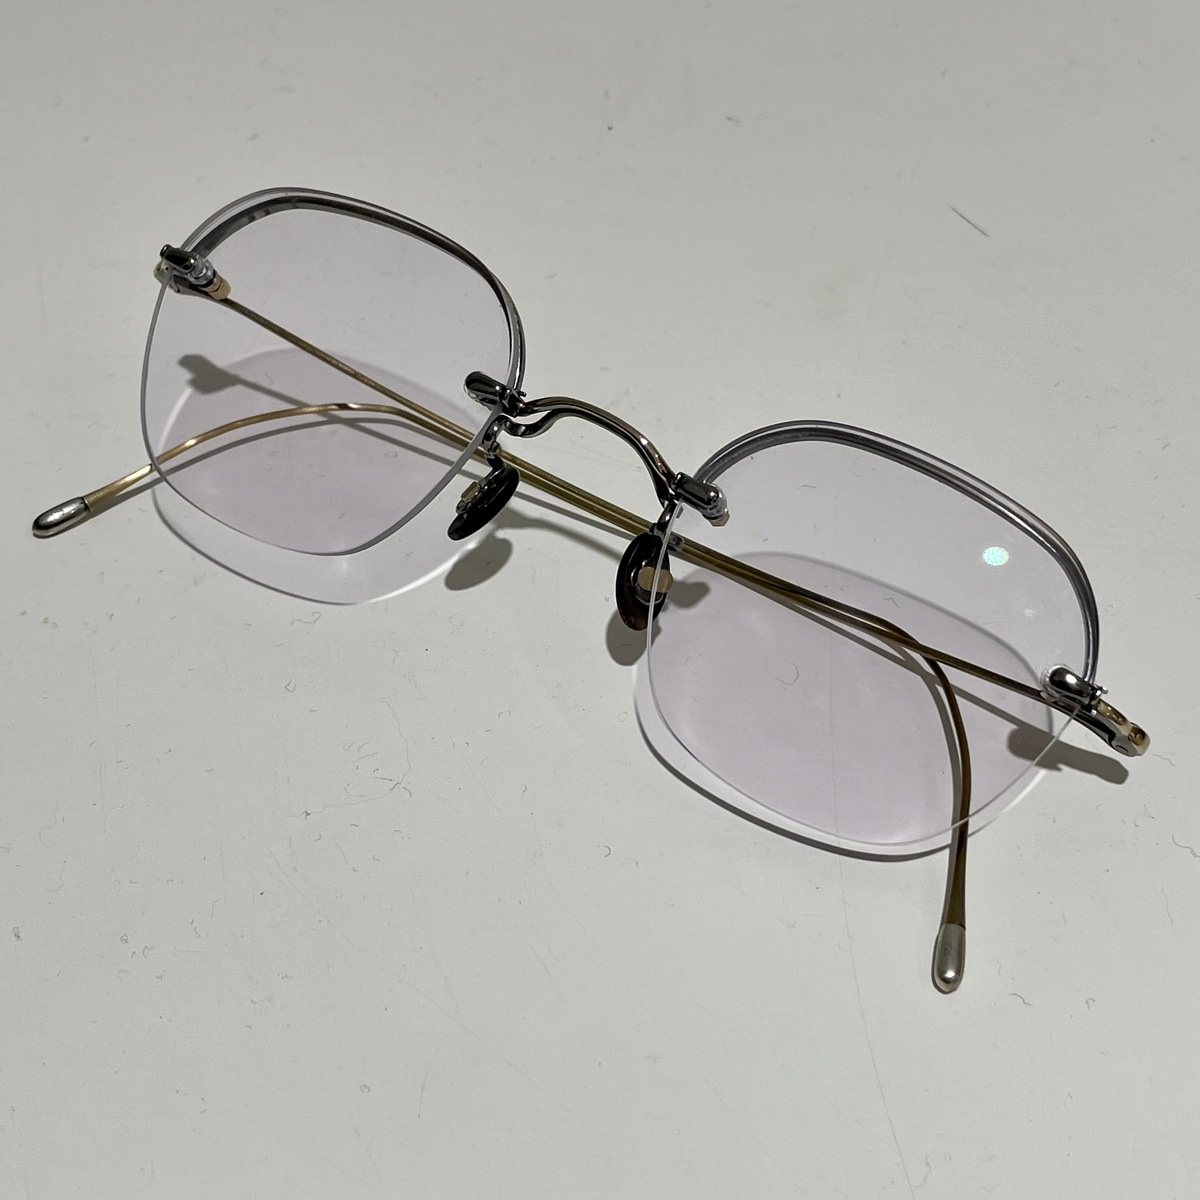 アイヴァン7285の10eyevan no.2 46-4S リムウェイ式 ツーポイントフレーム 眼鏡の買取実績です。